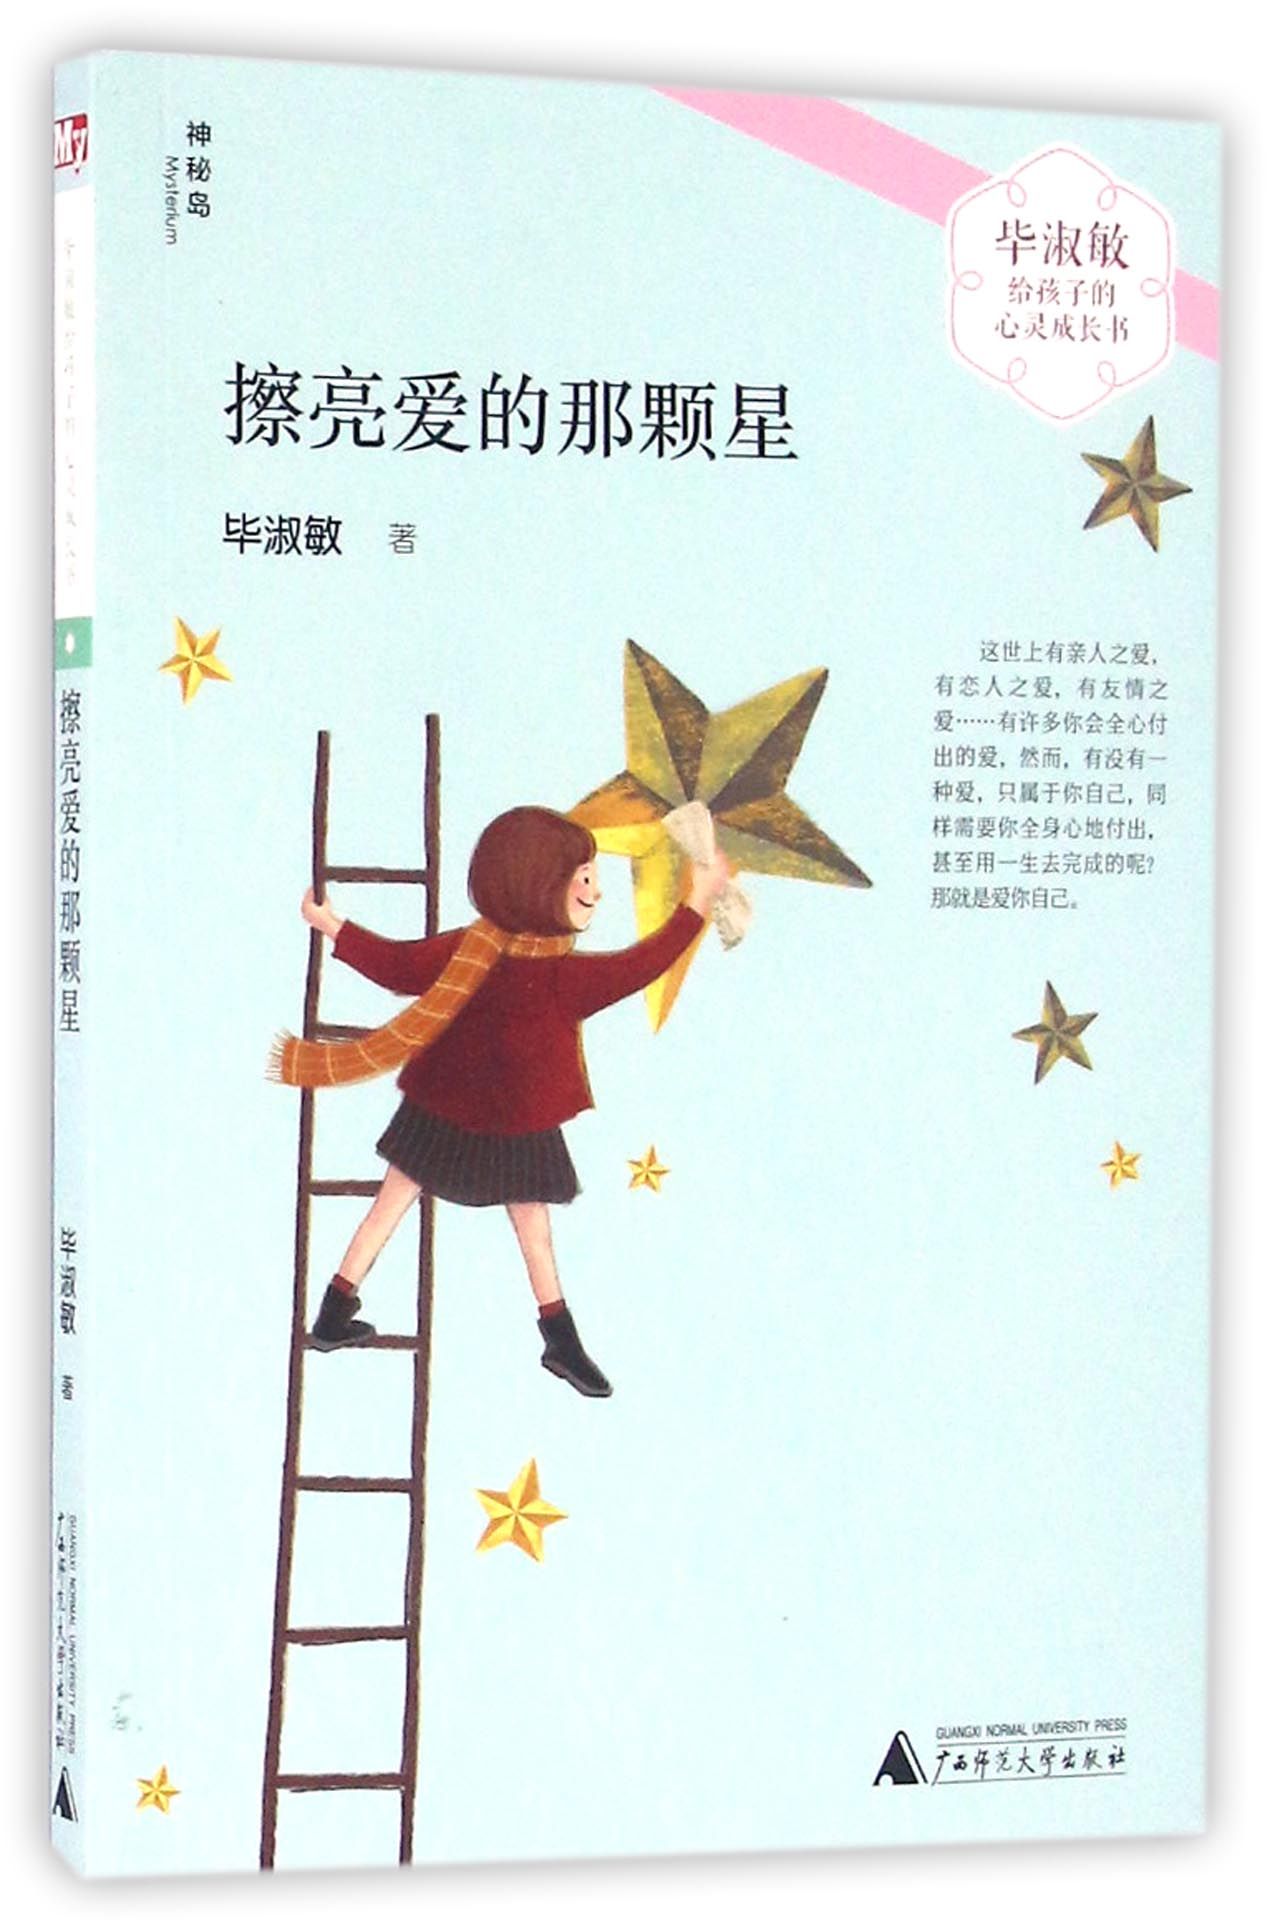 擦亮爱的那颗星/毕淑敏给孩子的心灵成长书 广西师范大学出版社